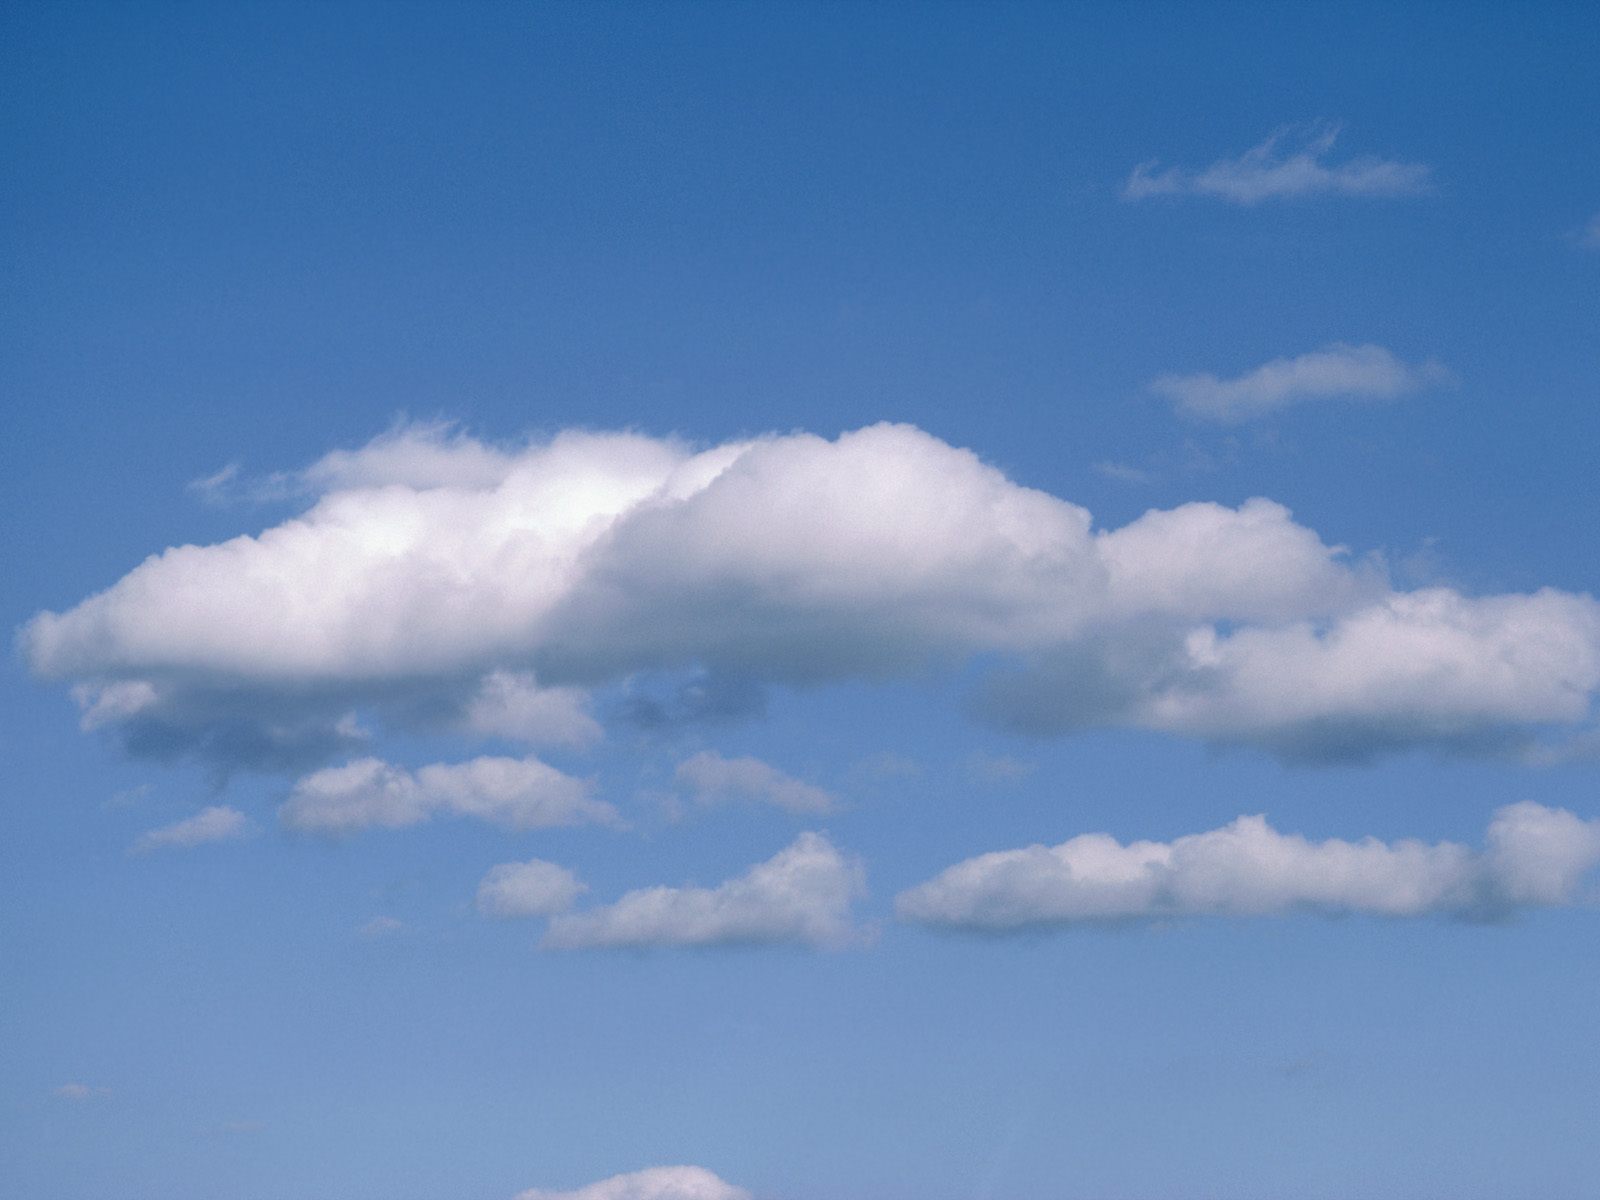 drifters cloud photograph